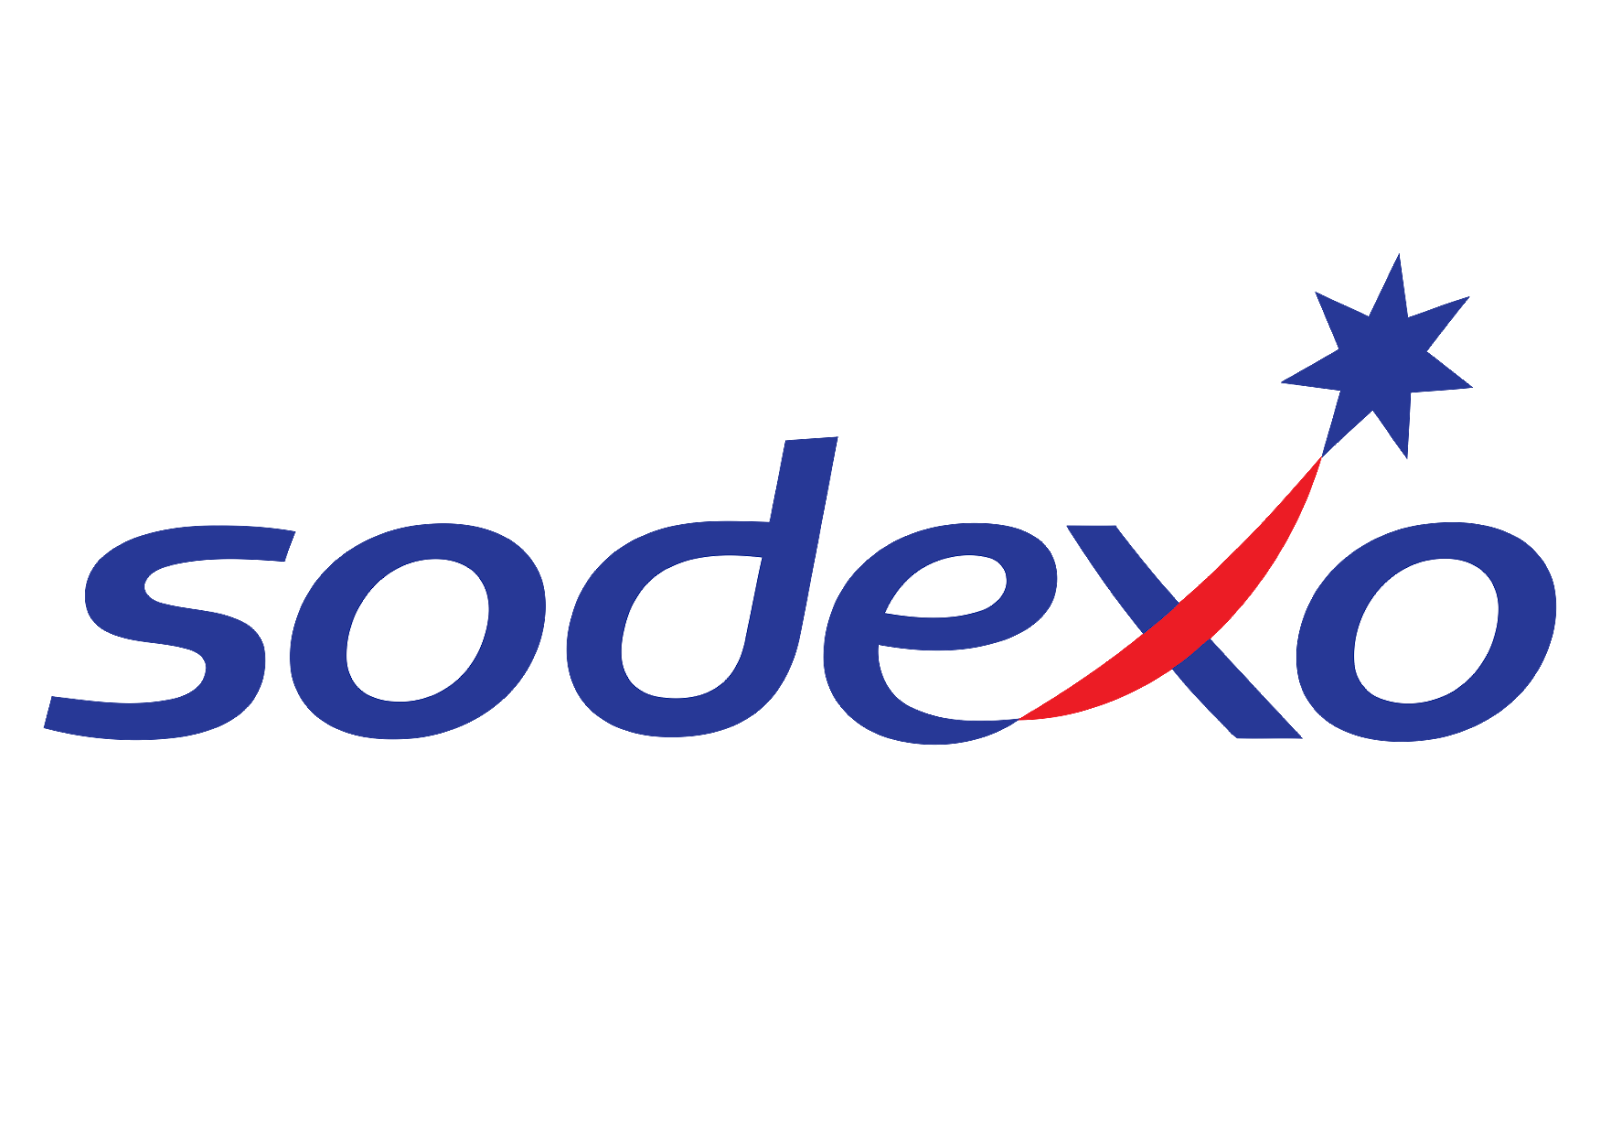 sodexo-logo-vector.png